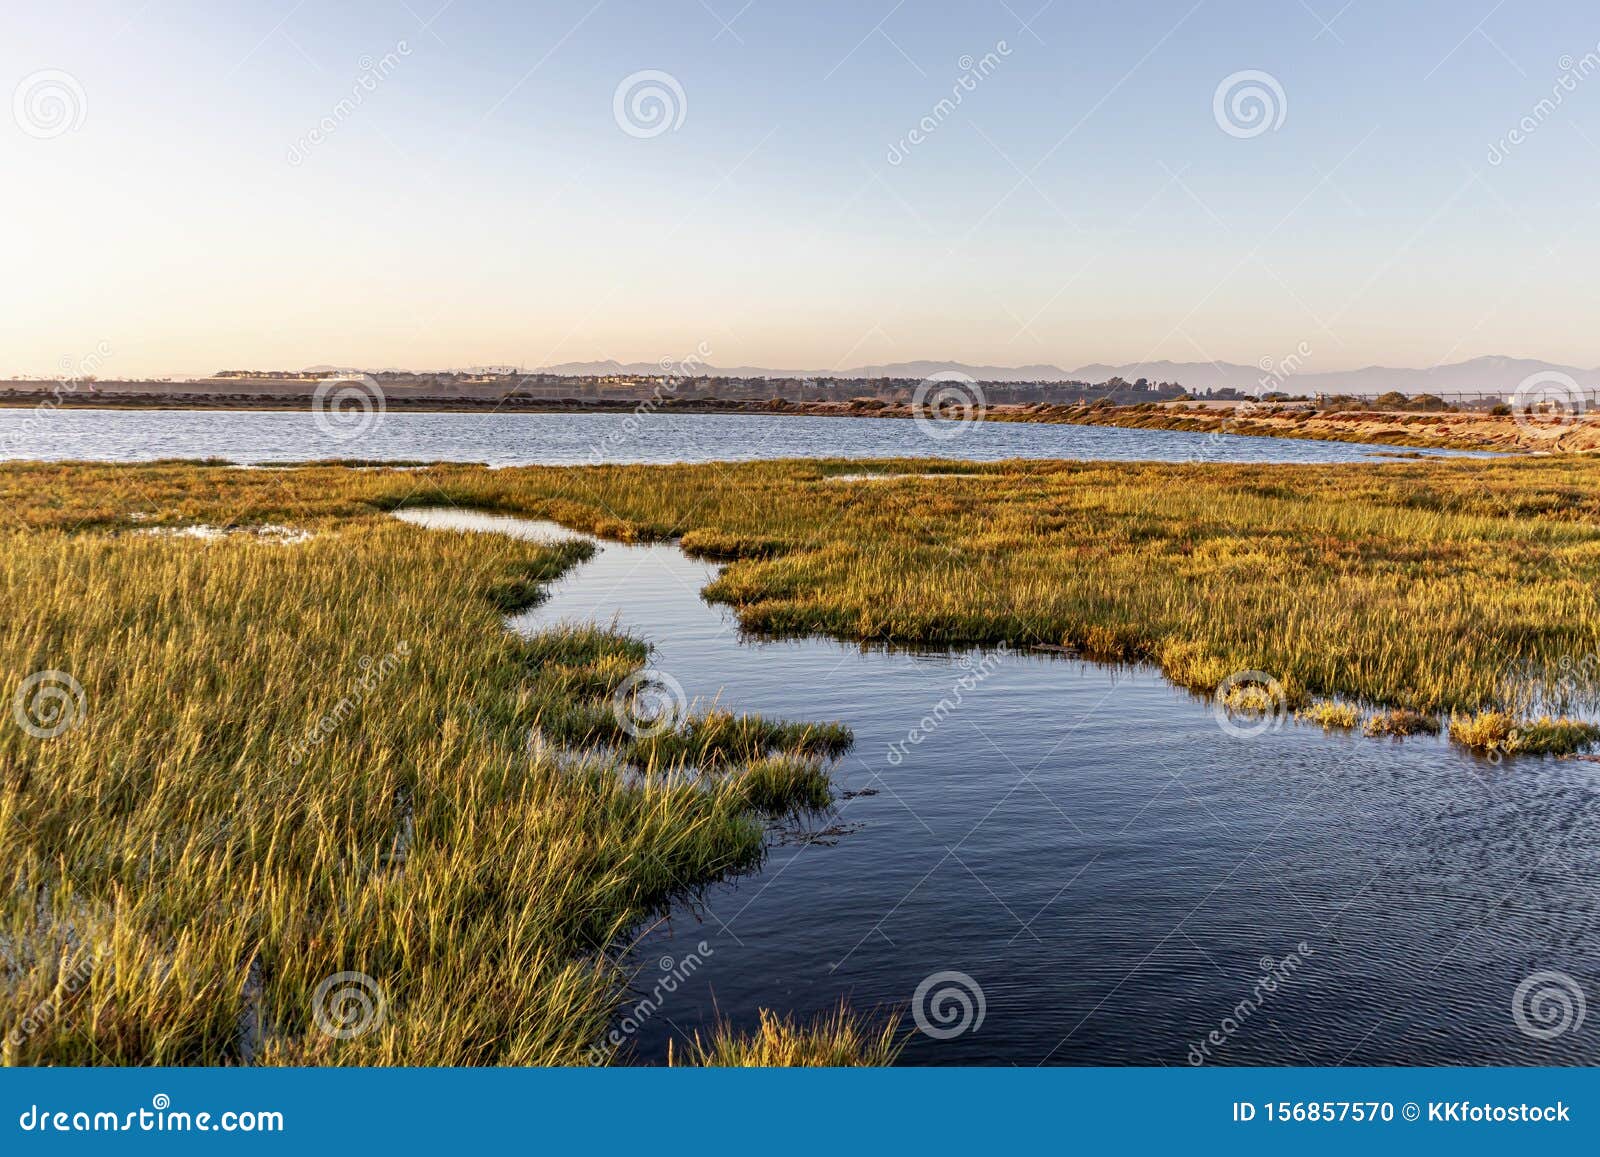 bolsa chica wetlands during sunset